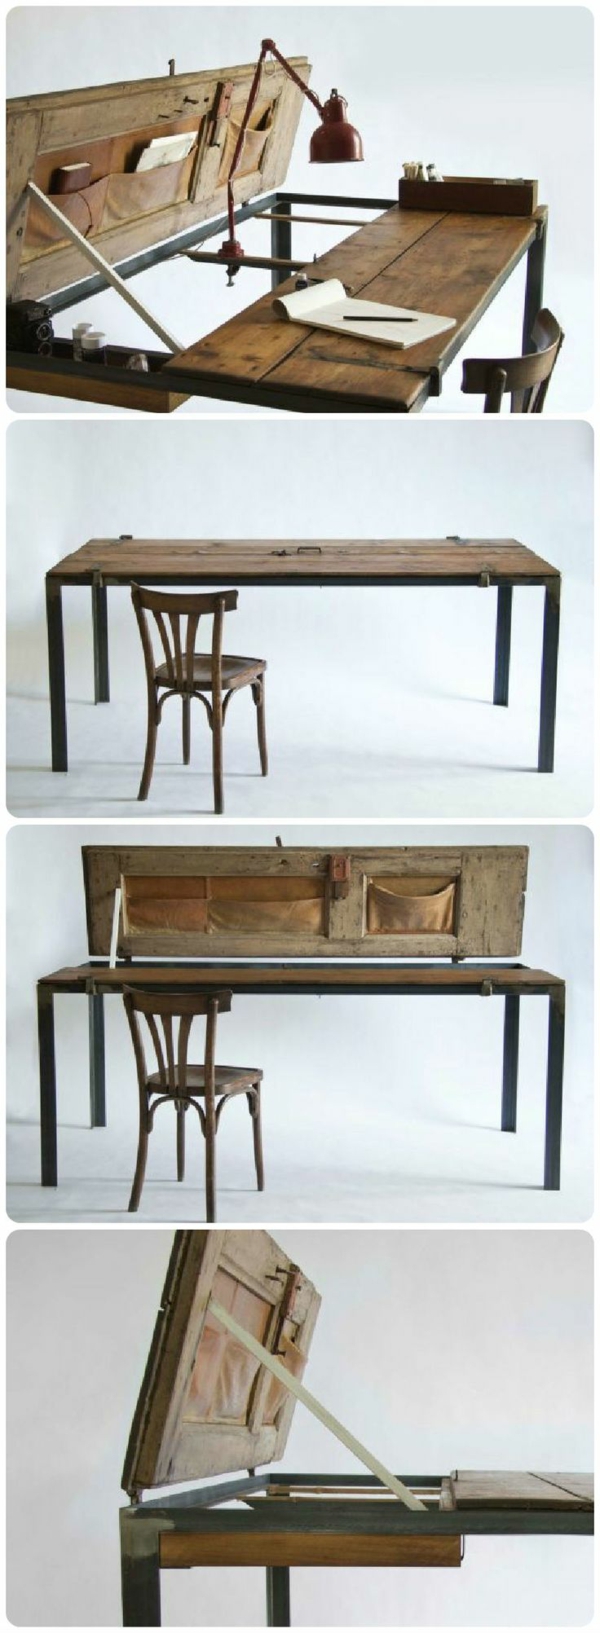 gamle møbler genoprette gamle møbler redesign bord gamle dør